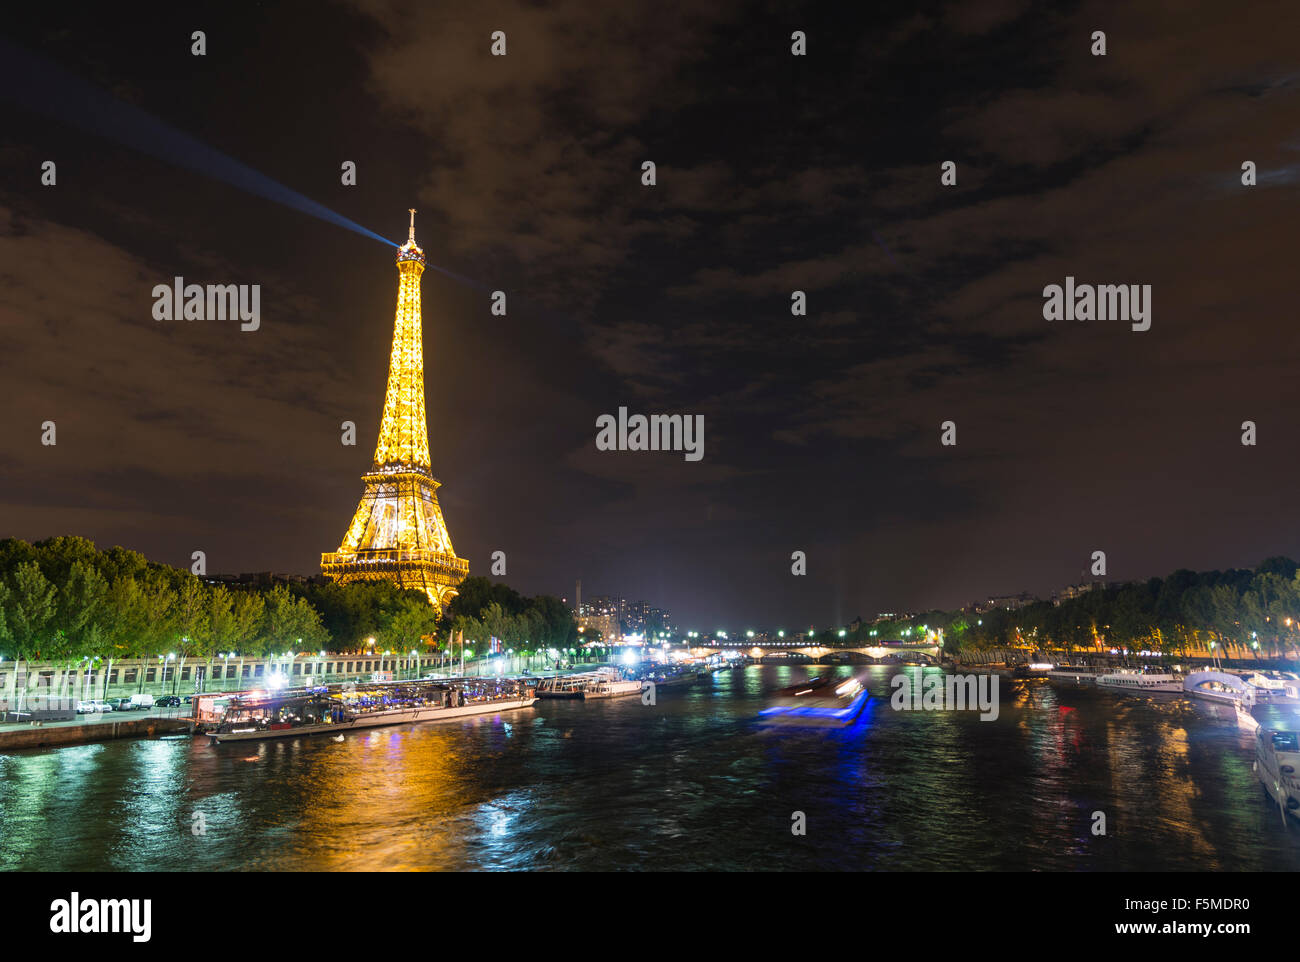 La Tour Eiffel illuminée la nuit, des bateaux sur la Seine, Tour Eiffel, Paris, Ile-de-France, France Banque D'Images